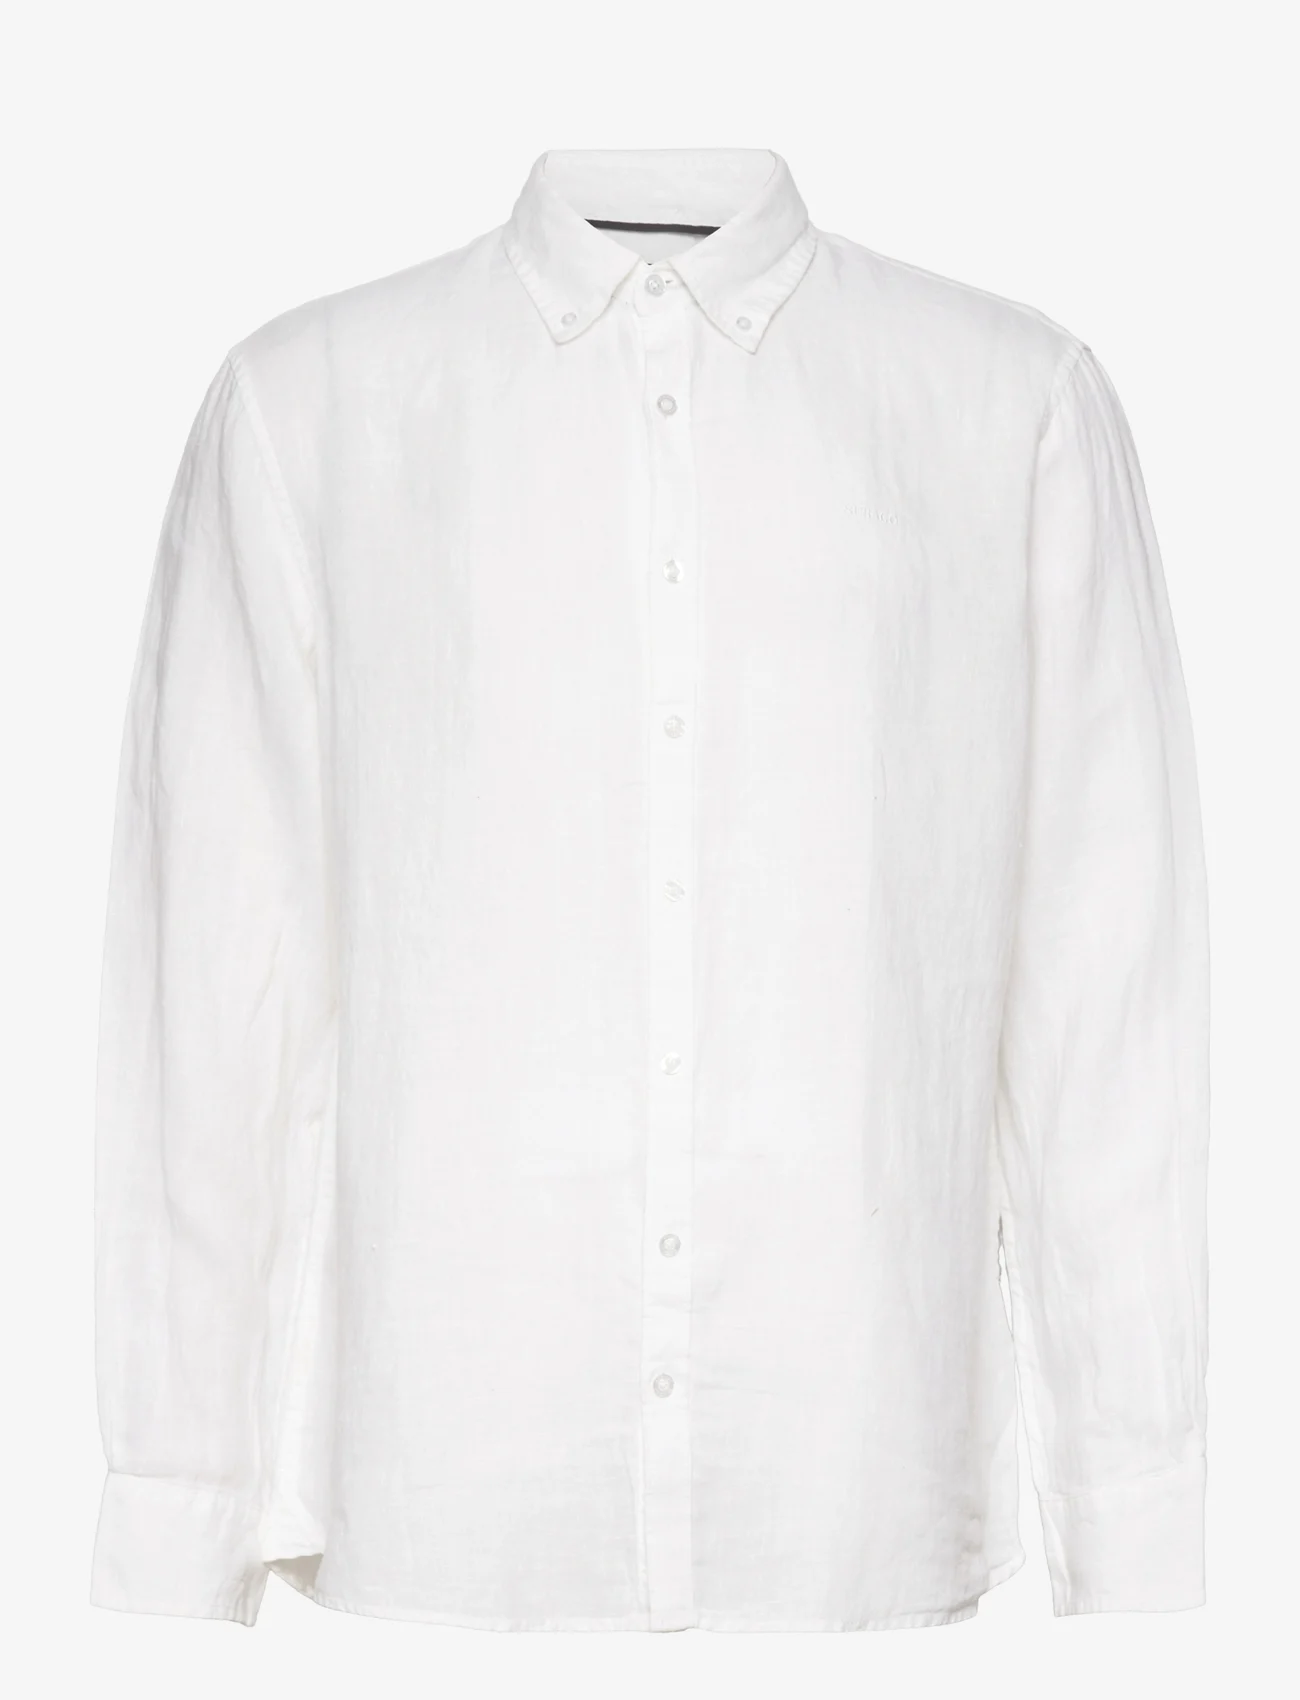 Sebago - Linen Shirt - lininiai marškiniai - white - 0